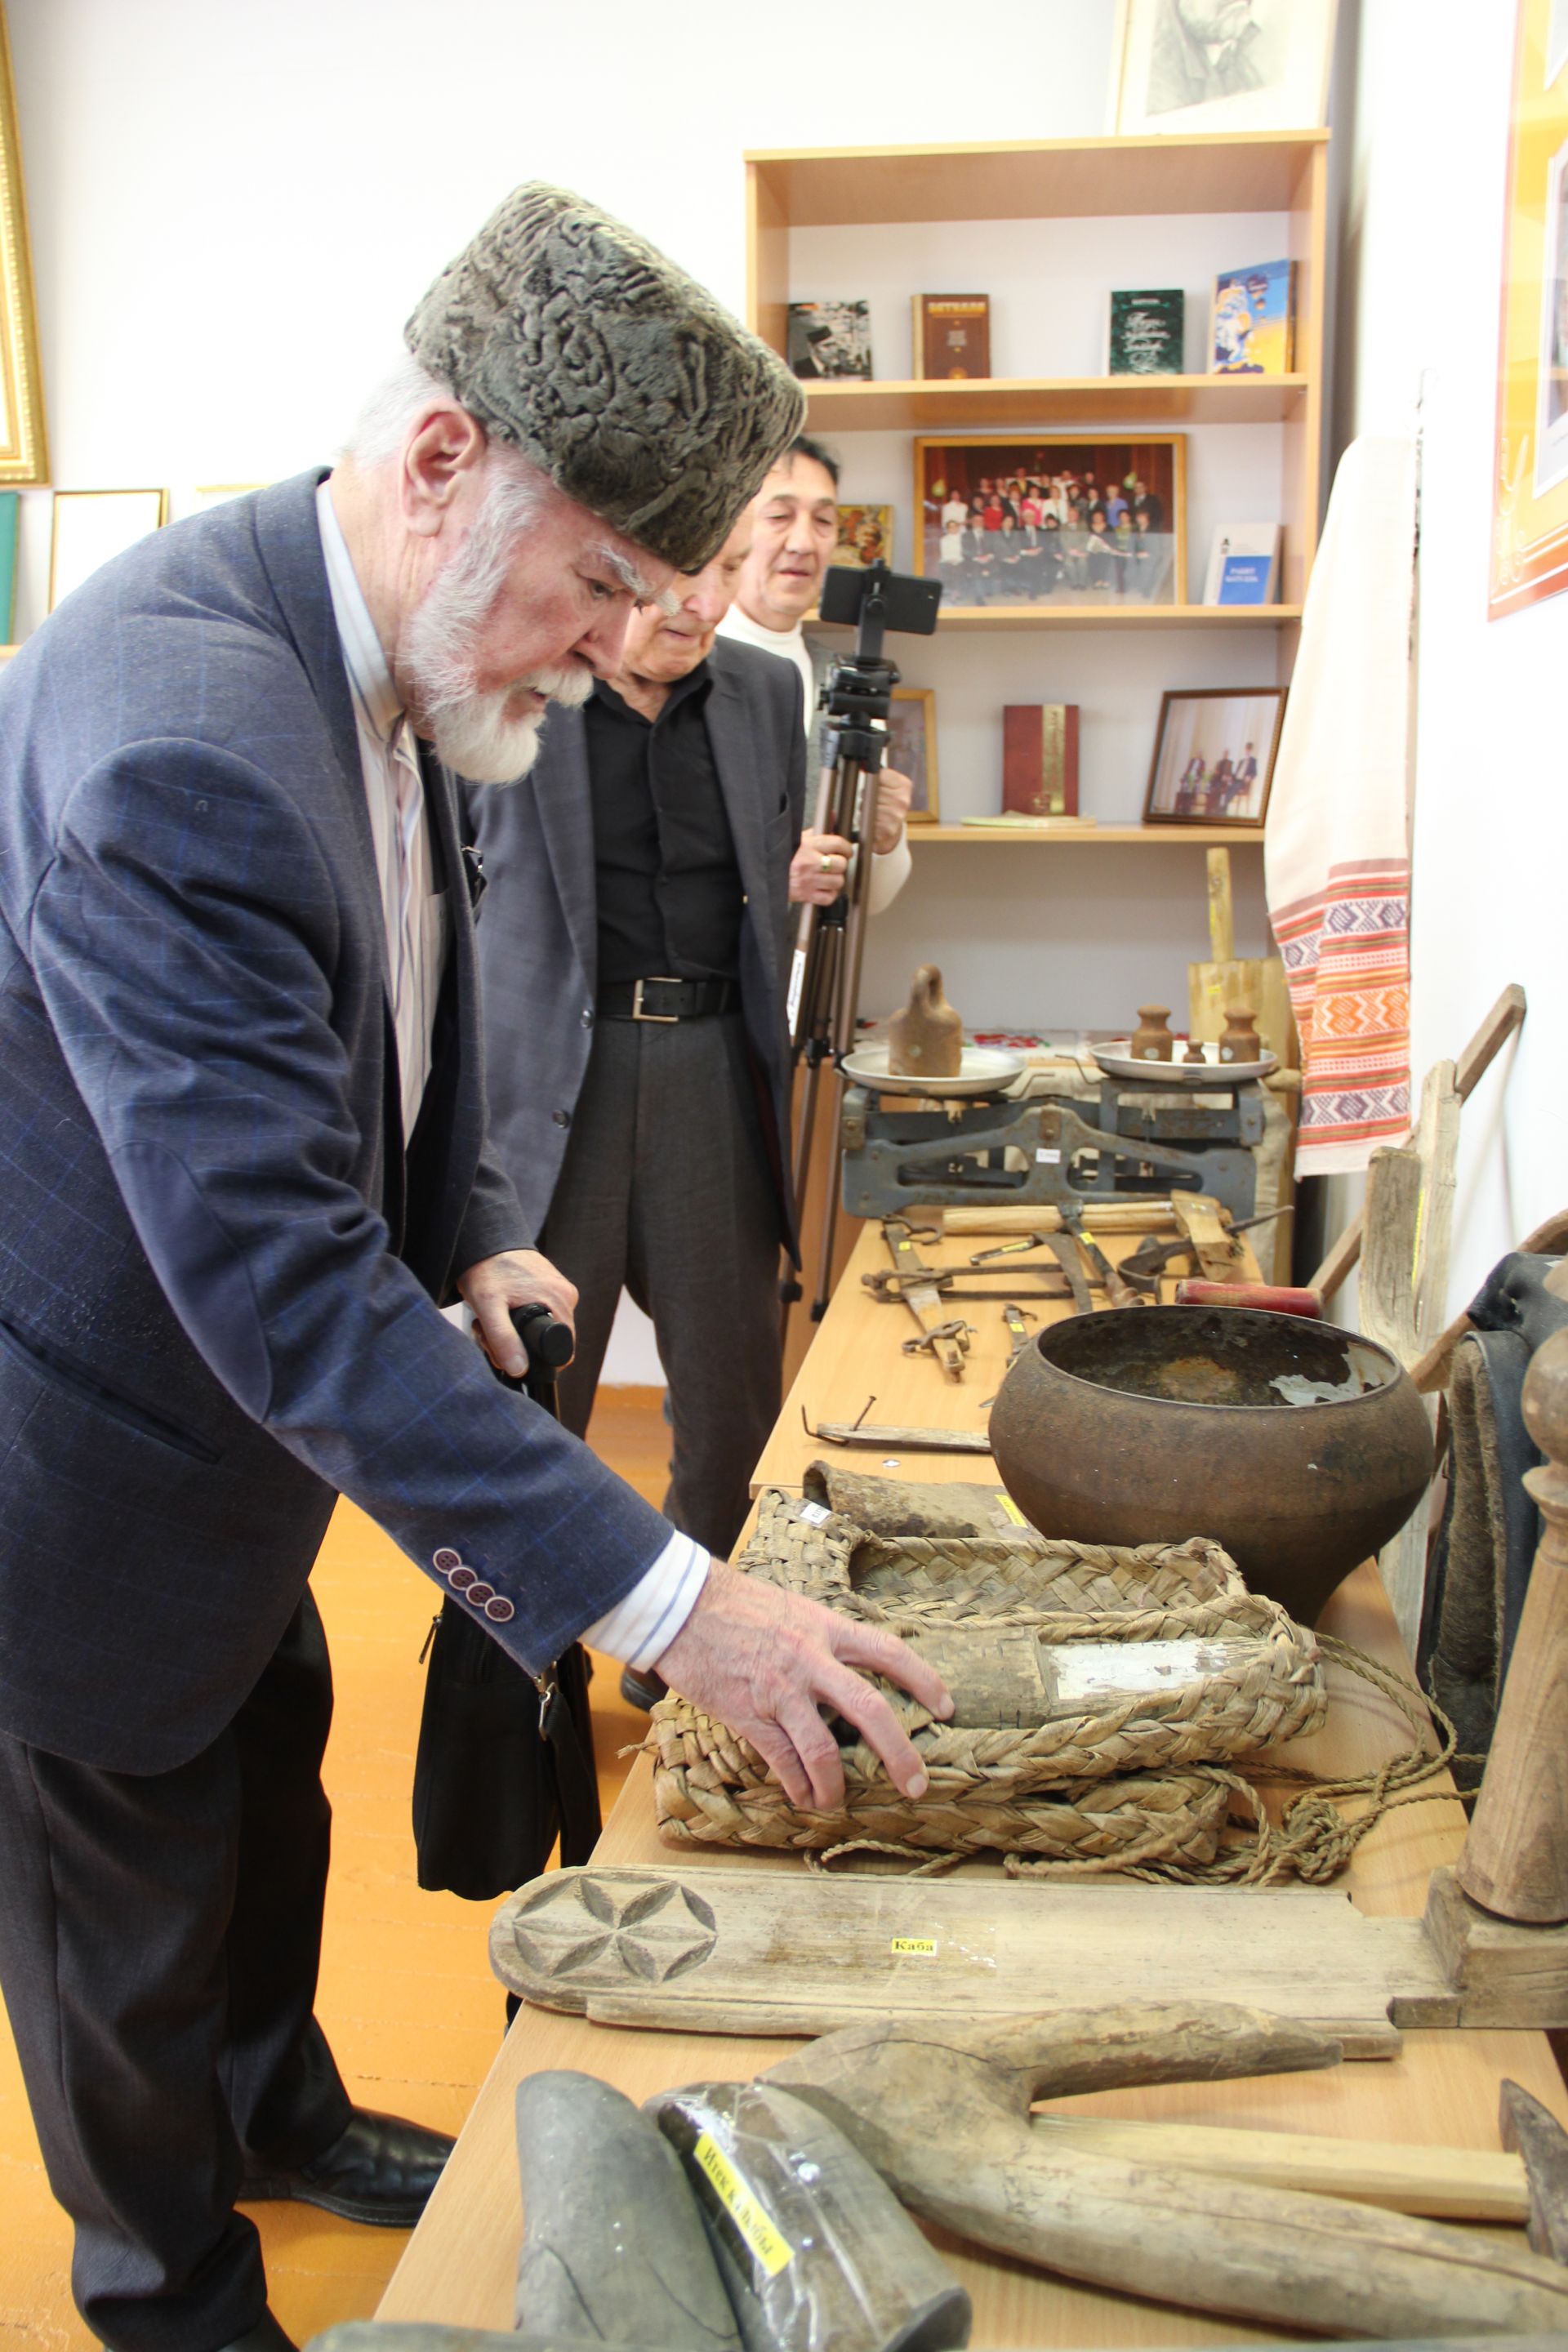 В Заинском районе открылся музей, посвященный Рабиту Батулле